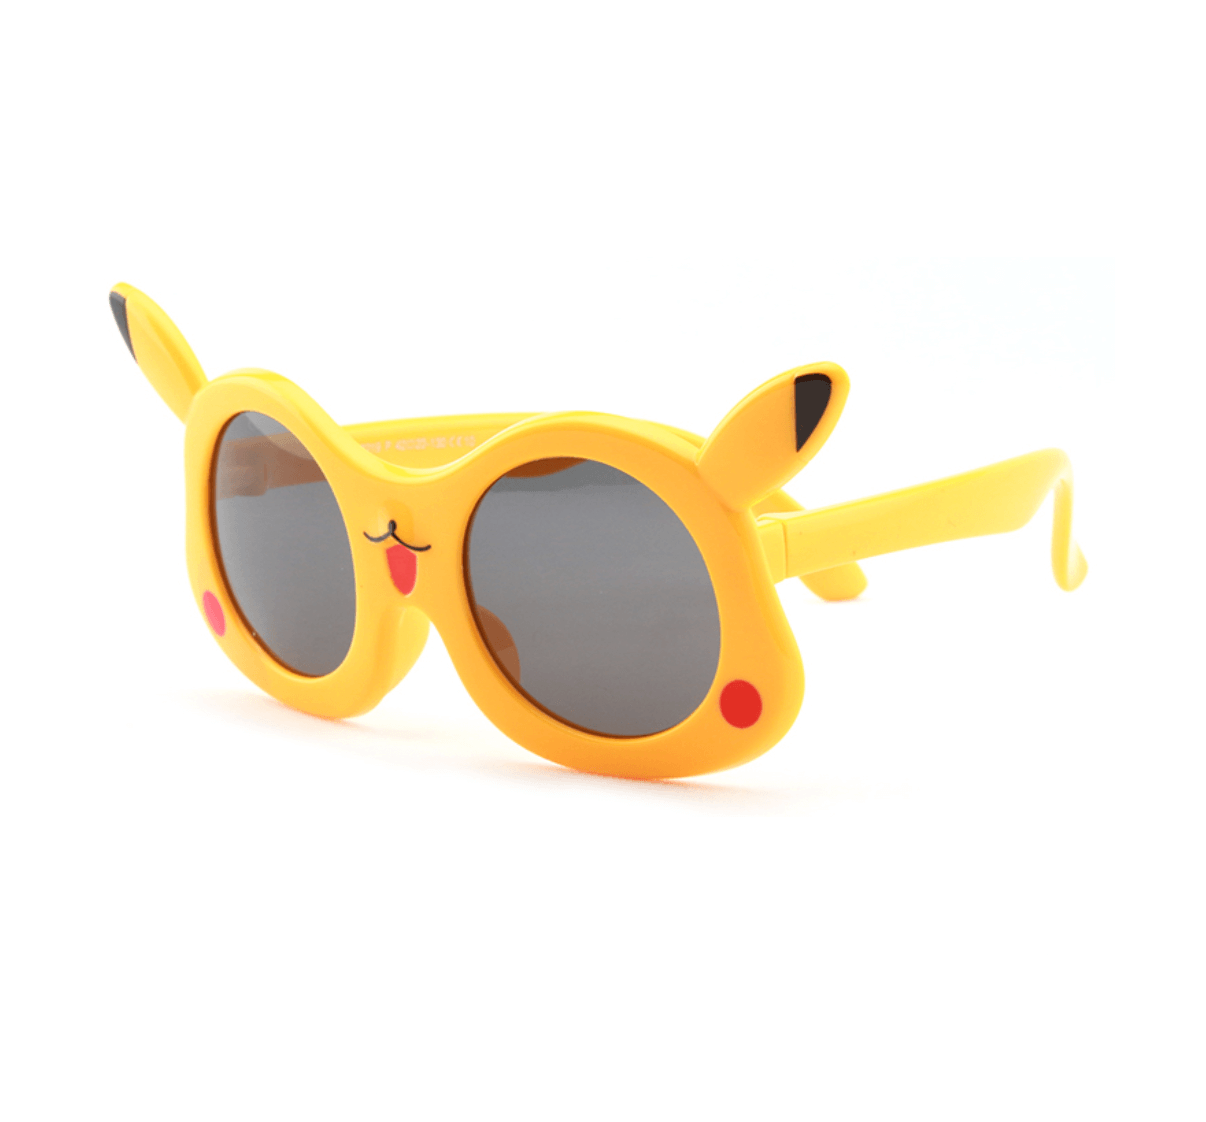 Custom Kids Sunglasses from China - Custom Sunglasses Manufacturer - Custom Eyewear Manufacturers in China